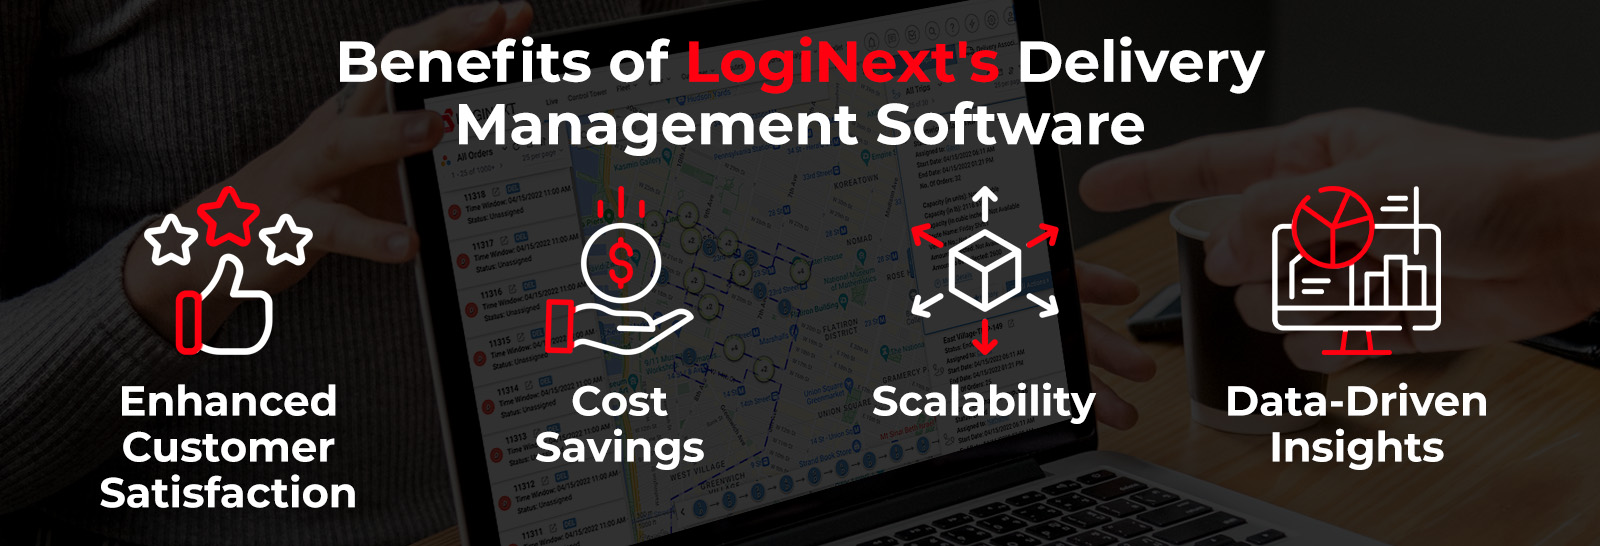 Beneficios del software de gestión de entregas de LogiNext